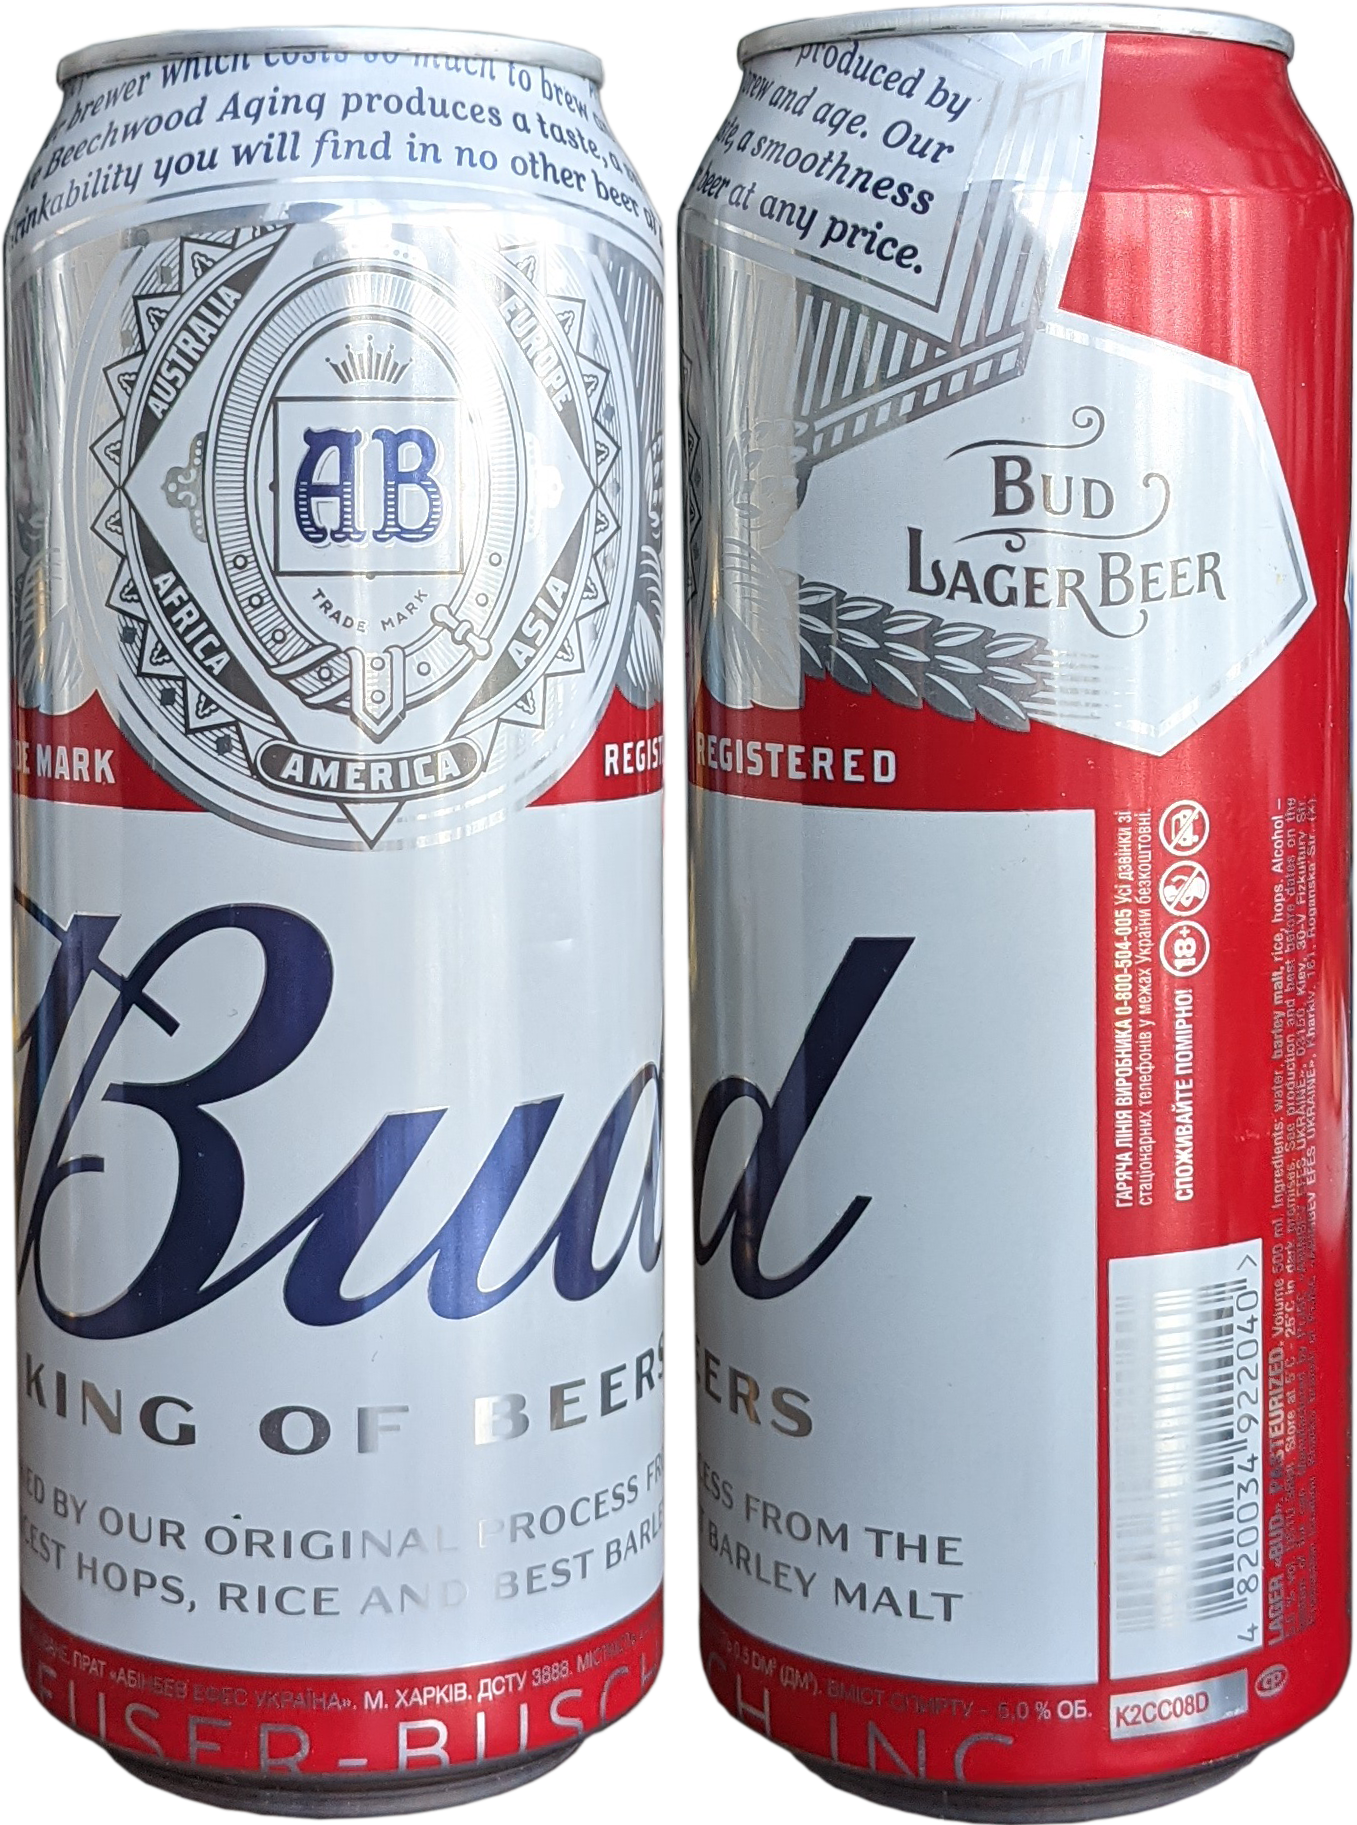 Пиво "бад" — особенности и история американского пива bud